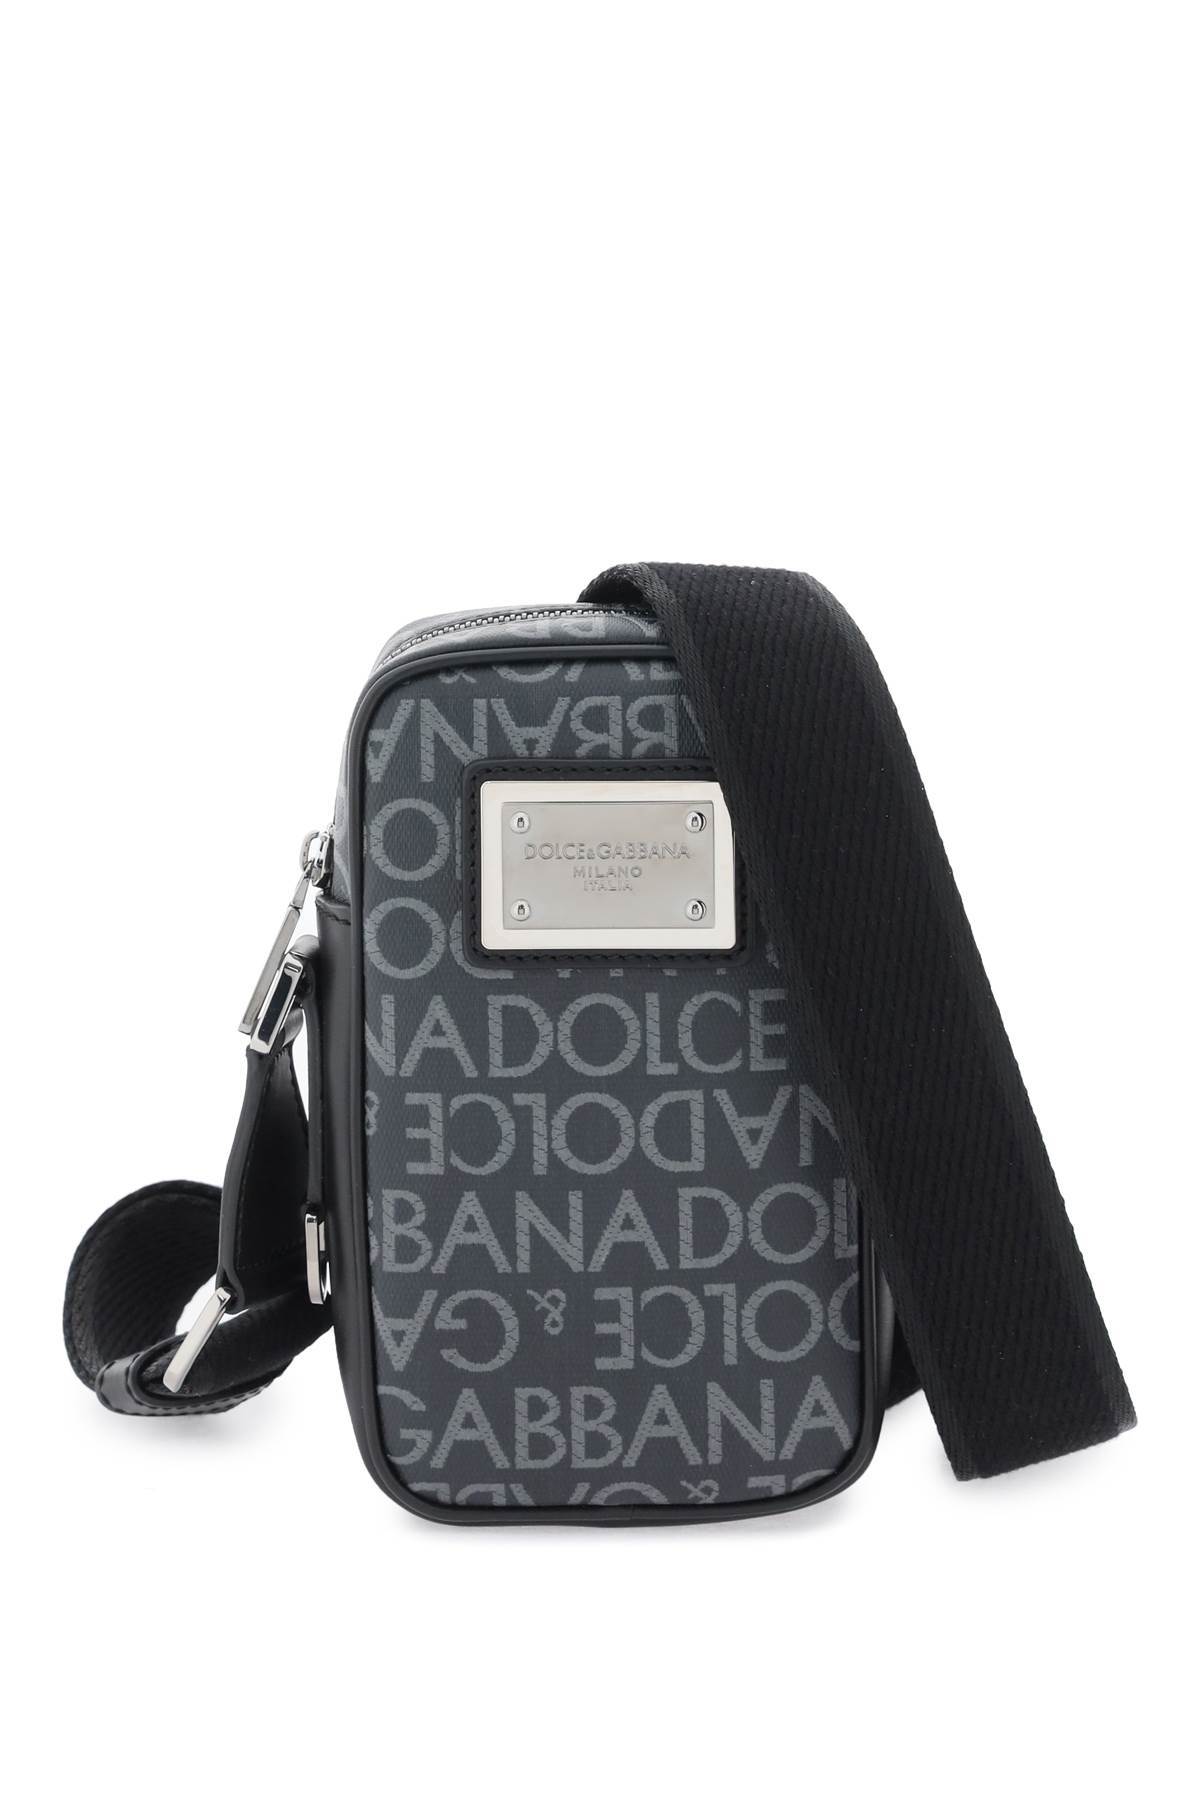 Dolce & Gabbana Canvas Shoulder Bag